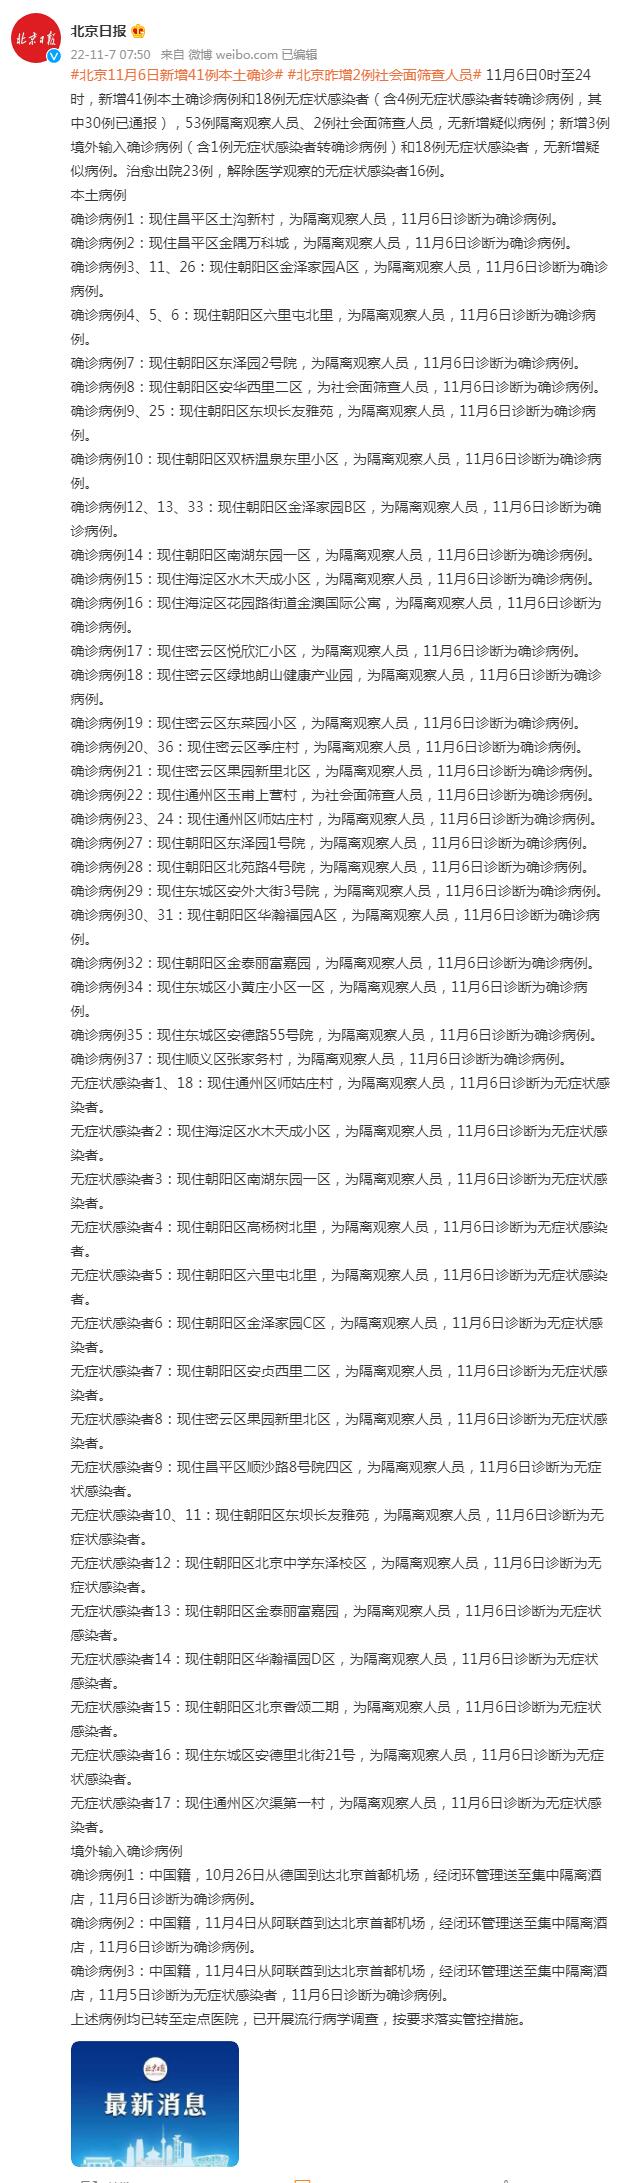 北京昨日新增本土41+18 11月7日北京疫情最新消息通报